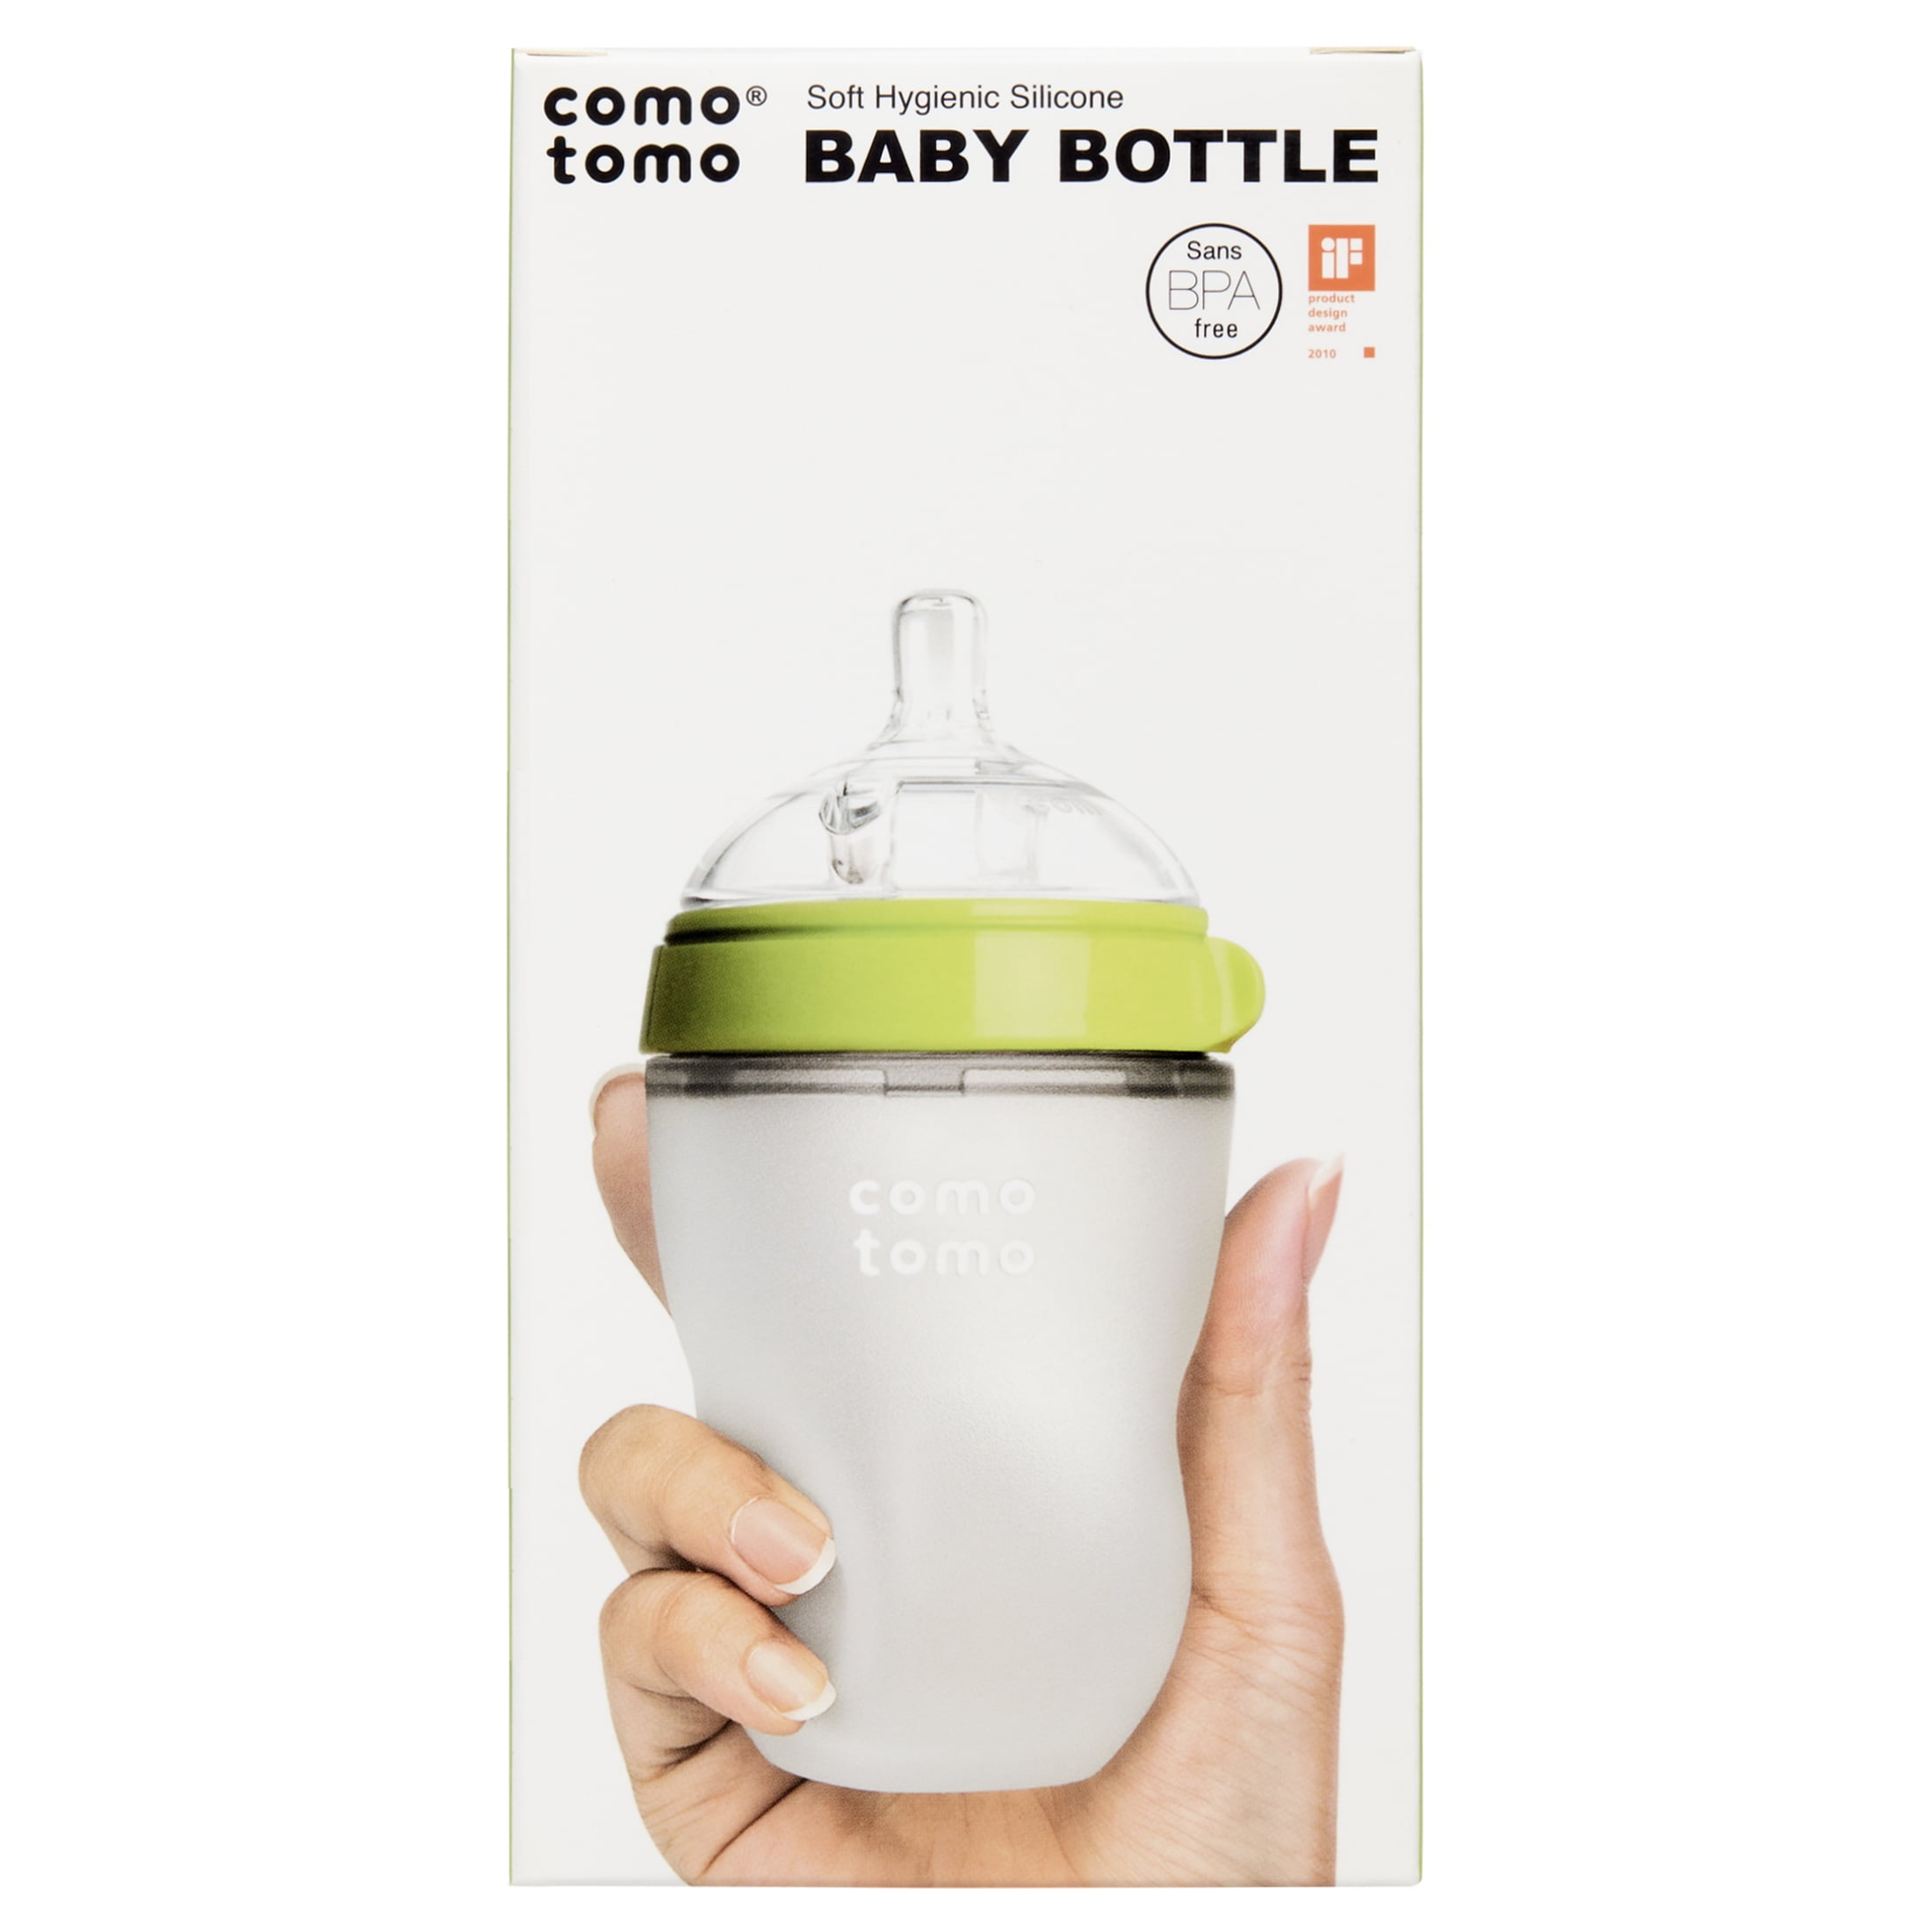 Comotomo Baby Bottle, Green, 8 oz